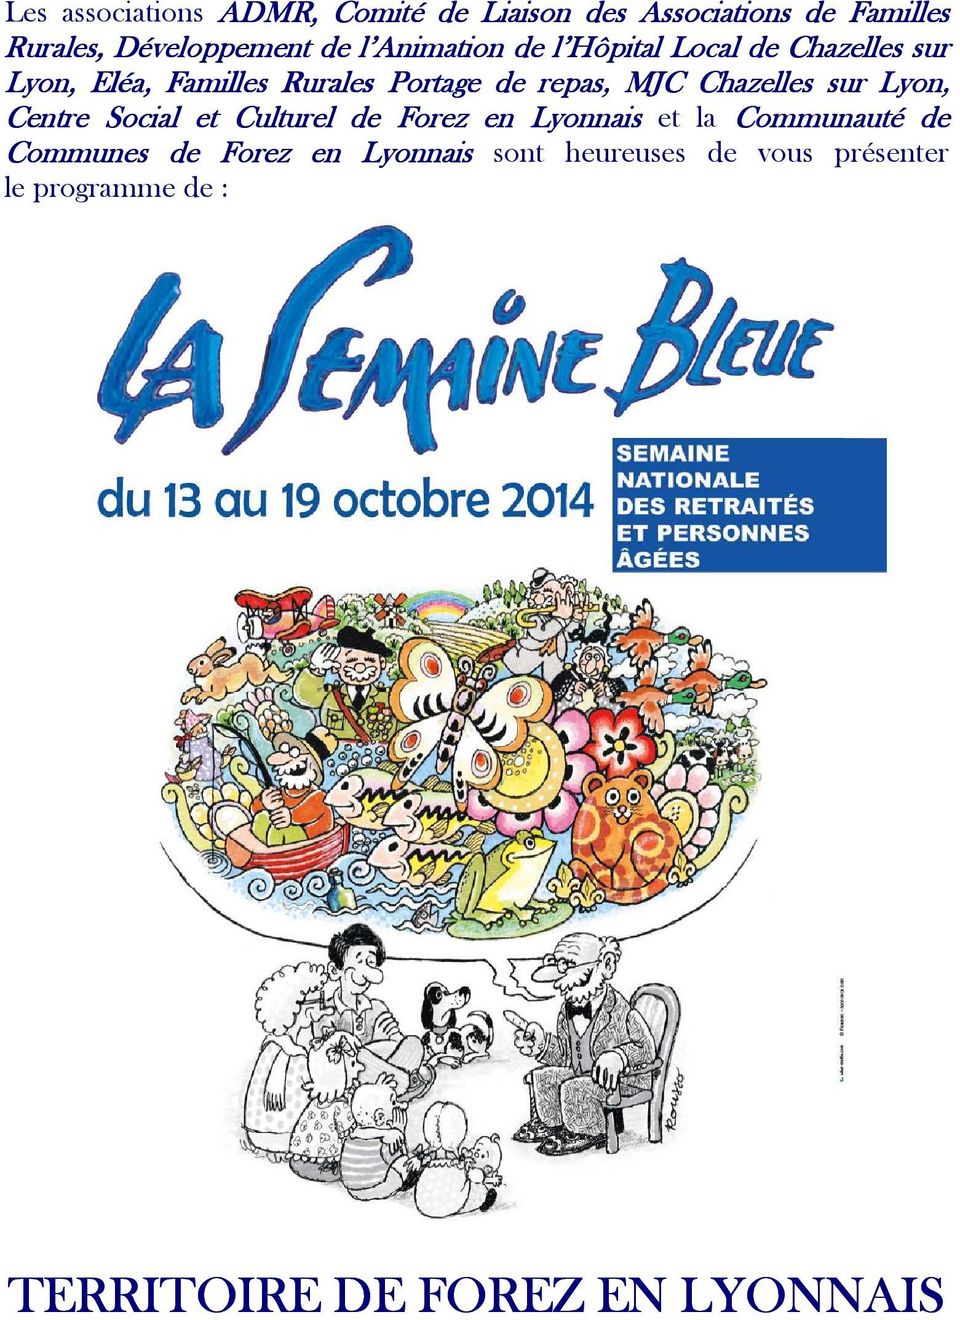 Chazelles sur Lyon, Centre Social et Culturel de Forez en Lyonnais et la Communauté de Communes de